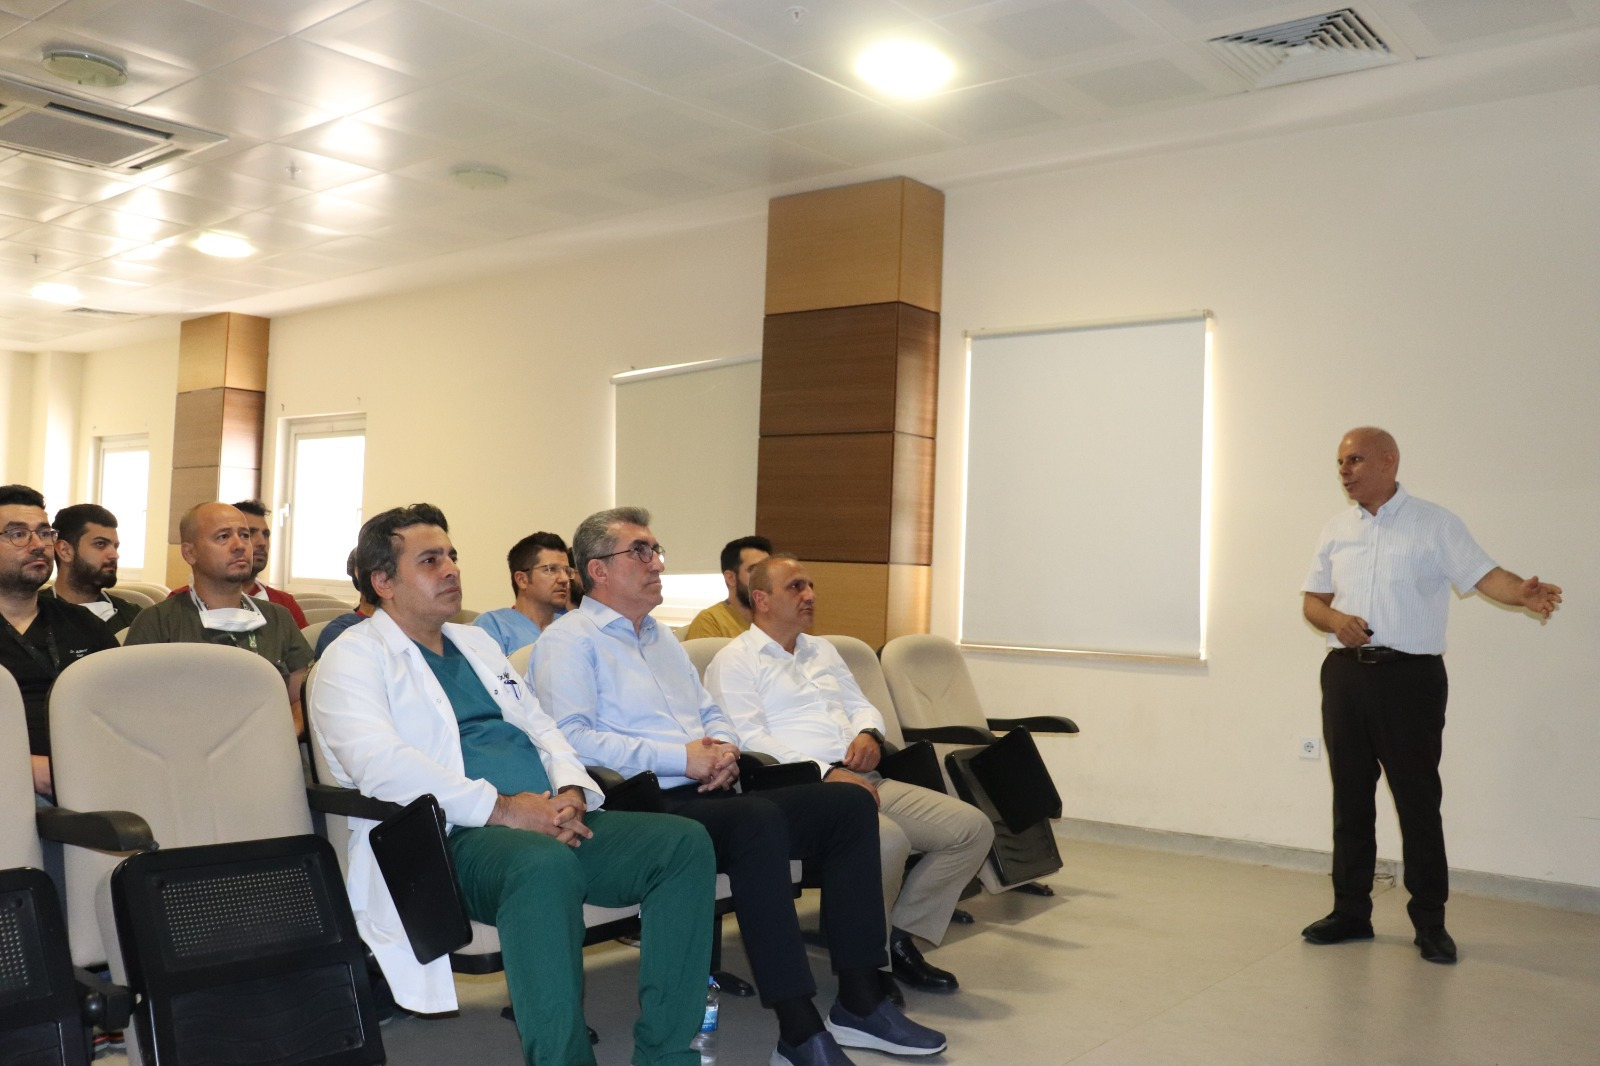 Şanlıurfa Harran Üniversitesi Hastanesi Üroloji Anabilim Dalı alanında tescillendi